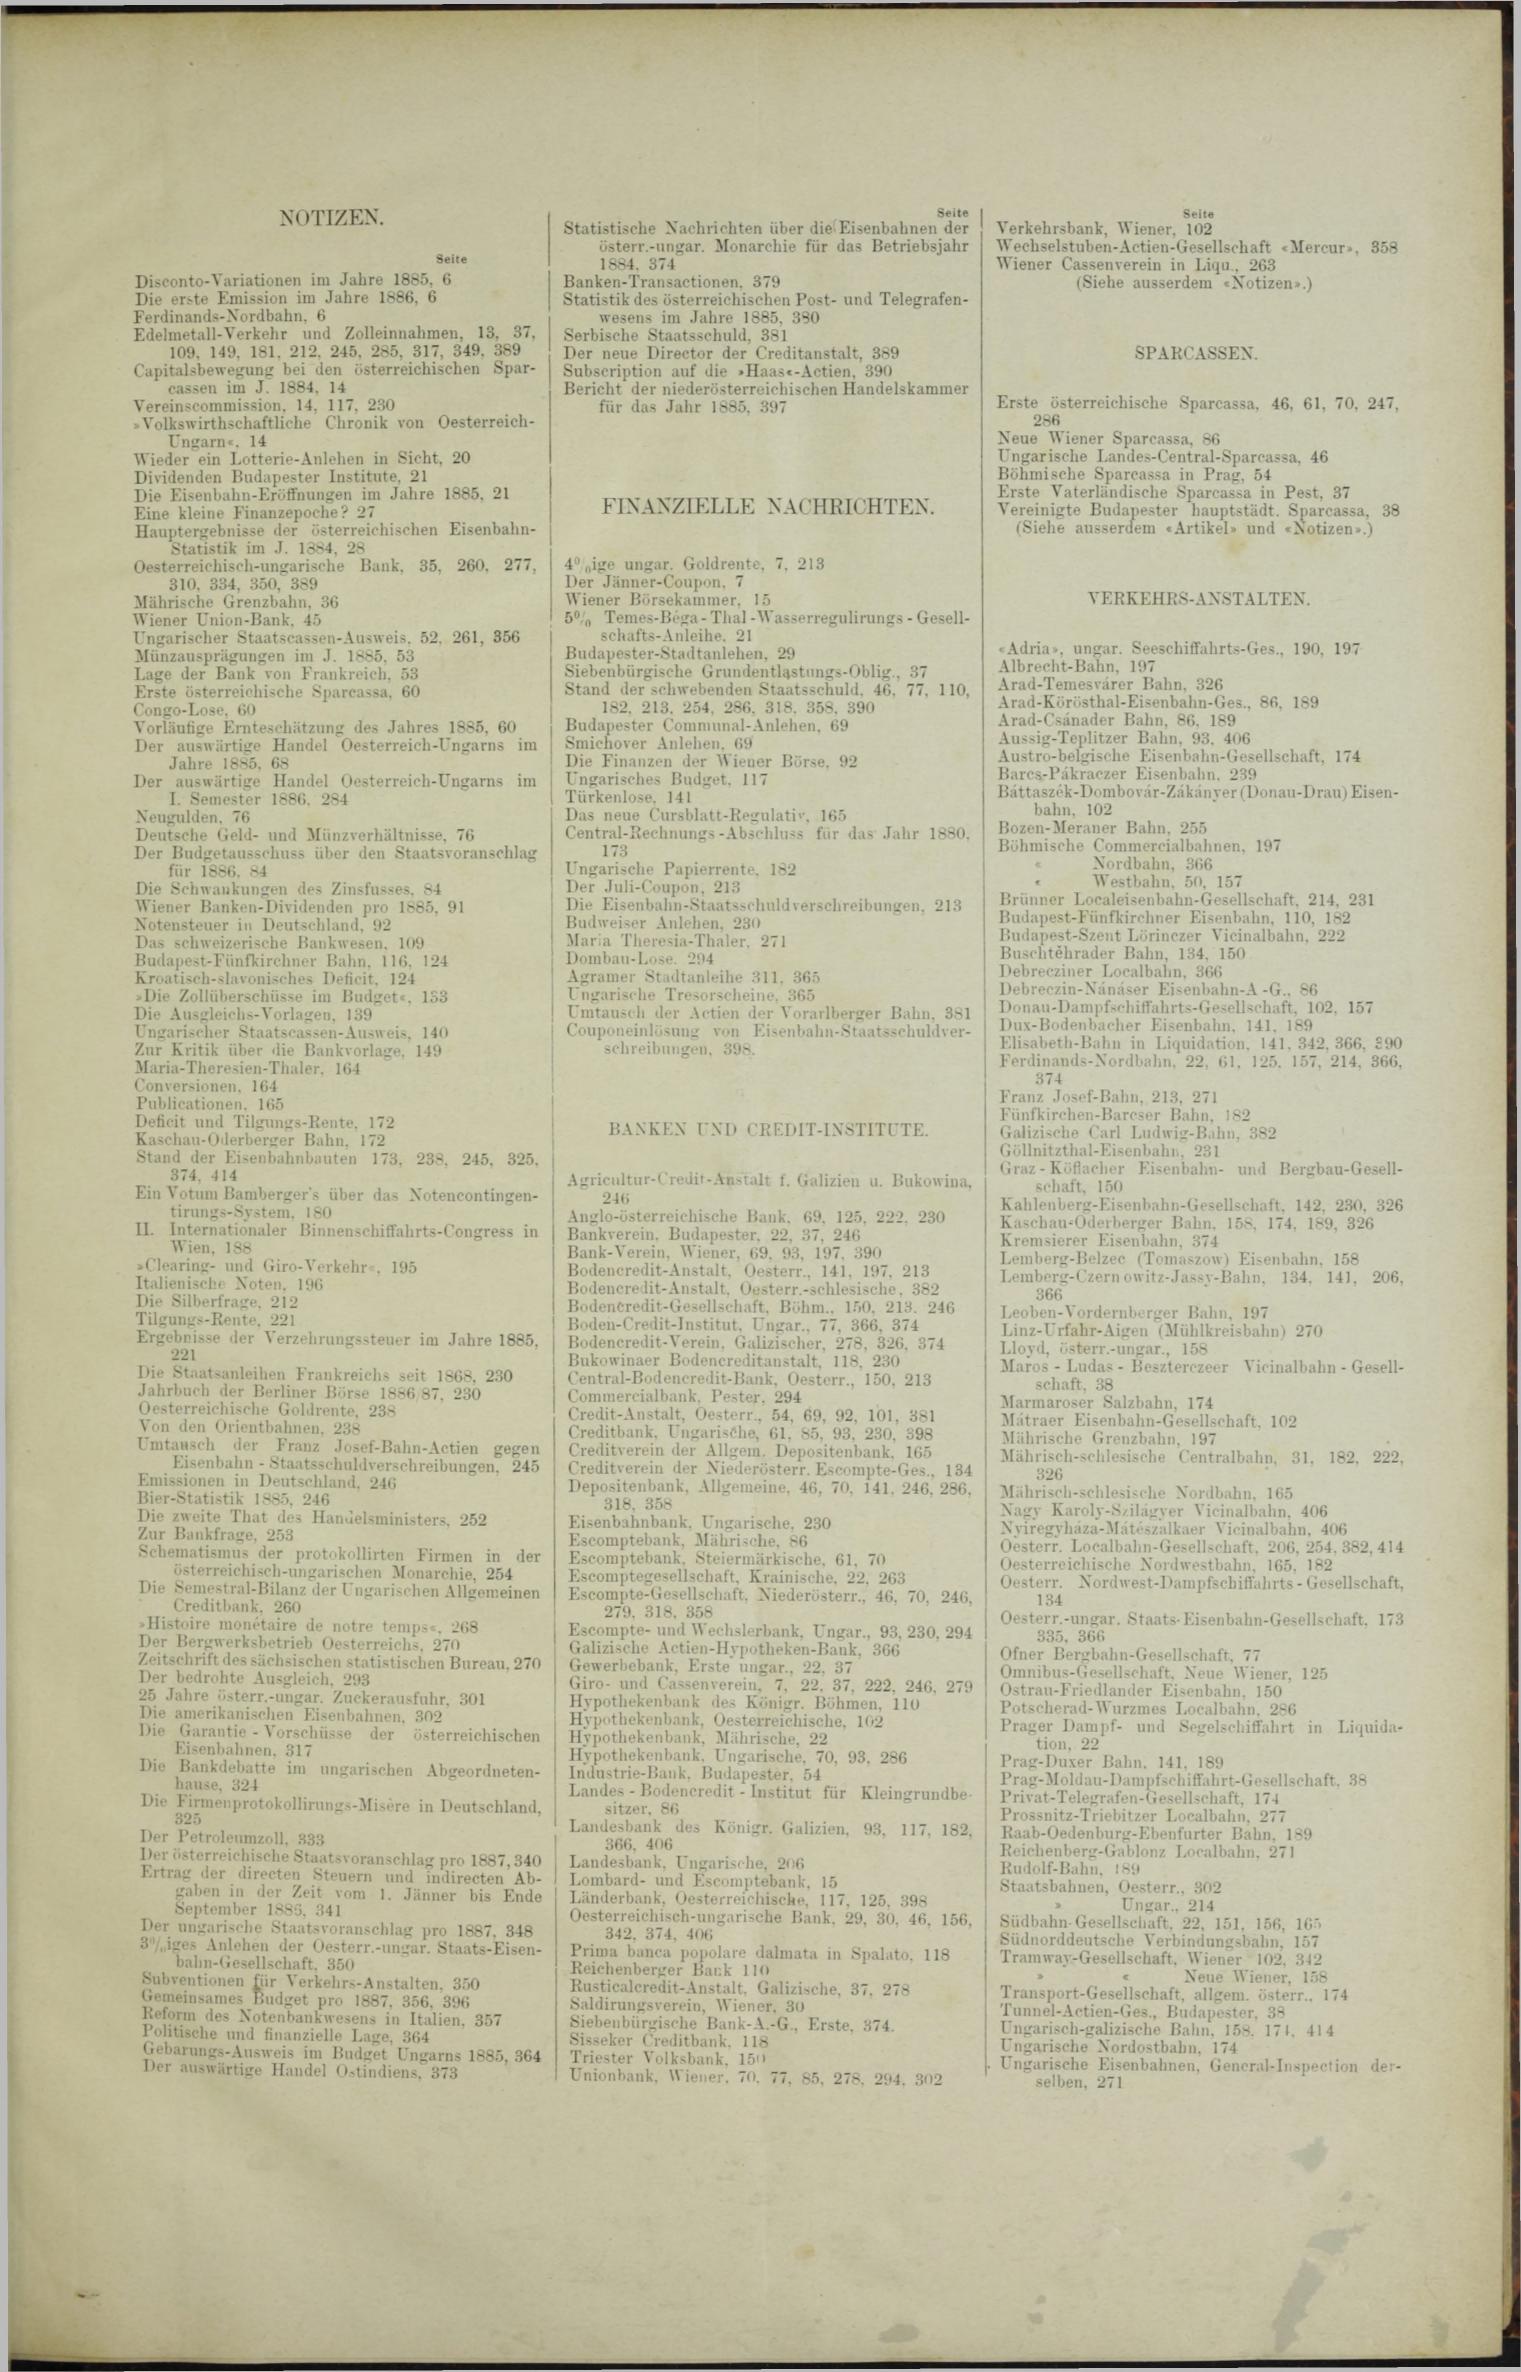 Der Tresor 24.06.1886 - Seite 11